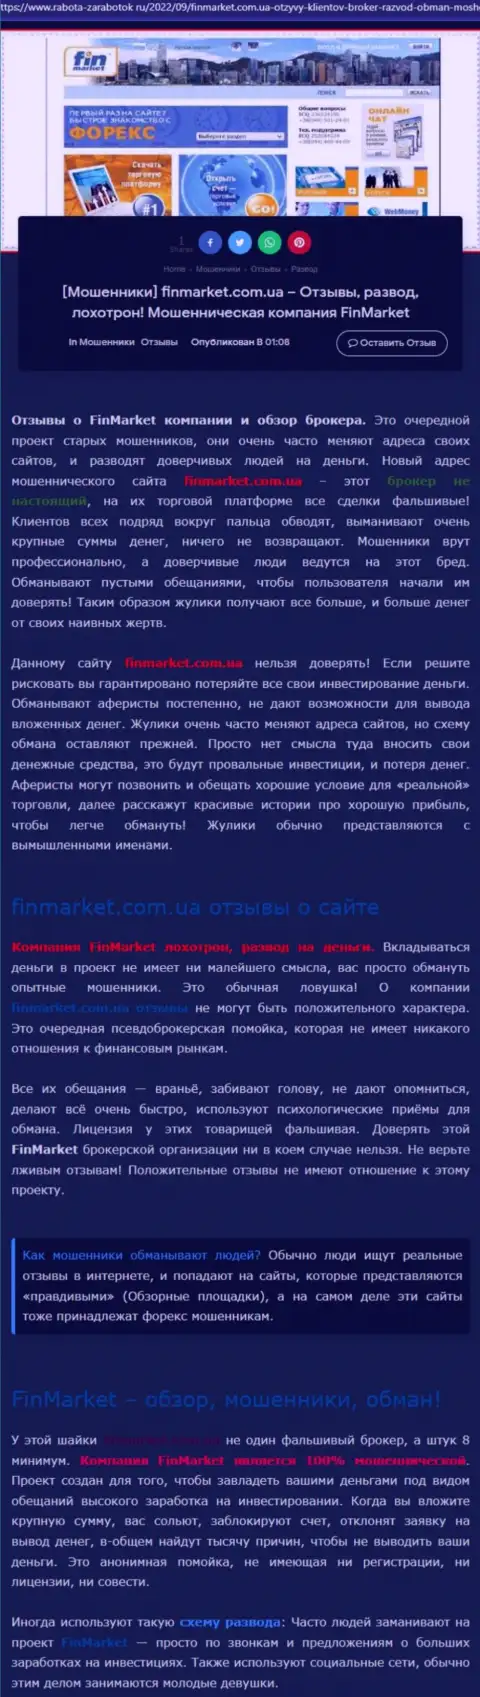 Анализ действий конторы FinMarket Com Ua - обувают грубо (обзор афер)